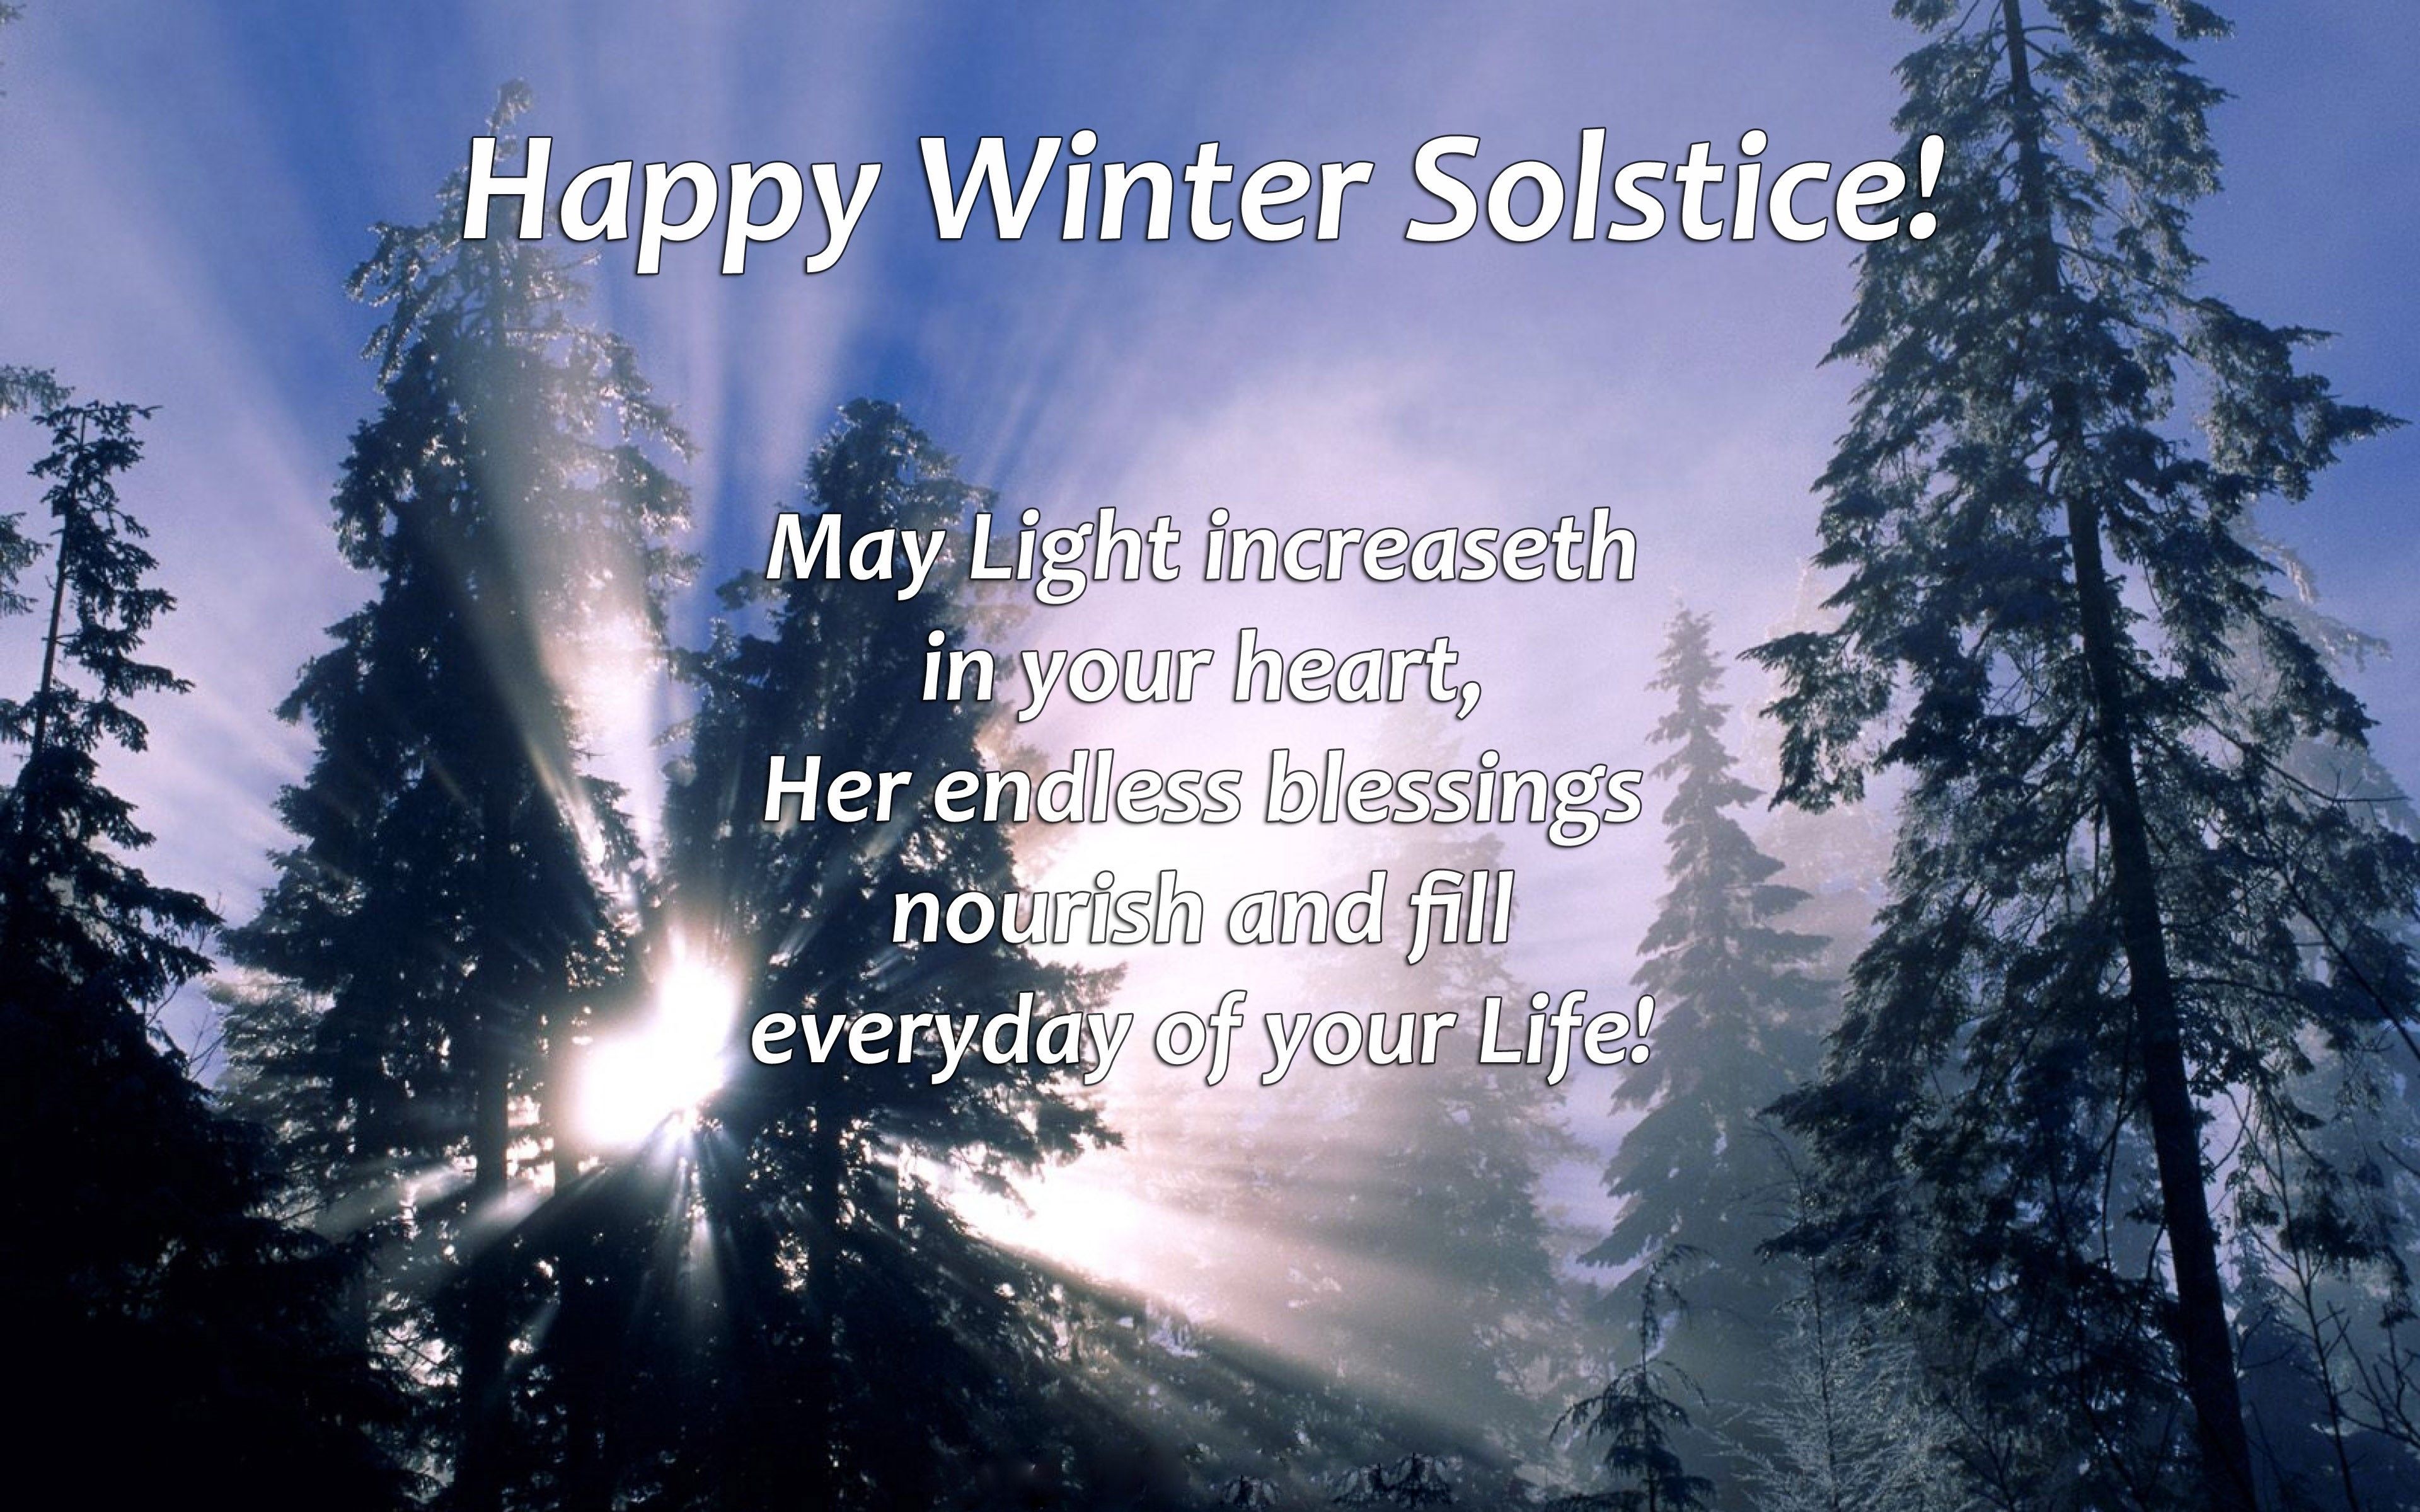 Winter Solstice 2022